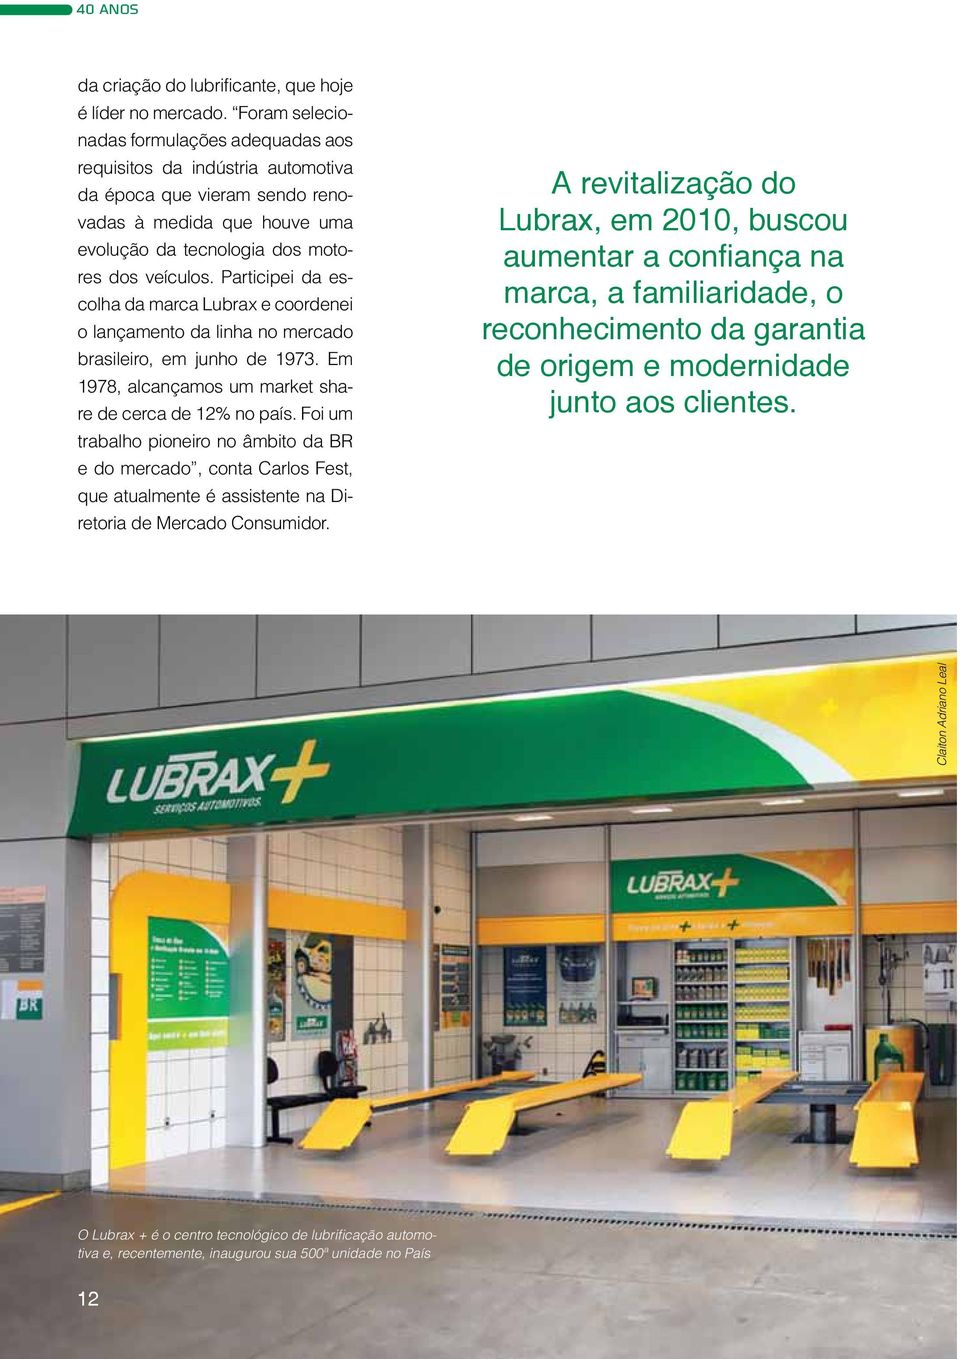 Participei da escolha da marca Lubrax e coordenei o lançamento da linha no mercado brasileiro, em junho de 1973. Em 1978, alcançamos um market share de cerca de 12% no país.